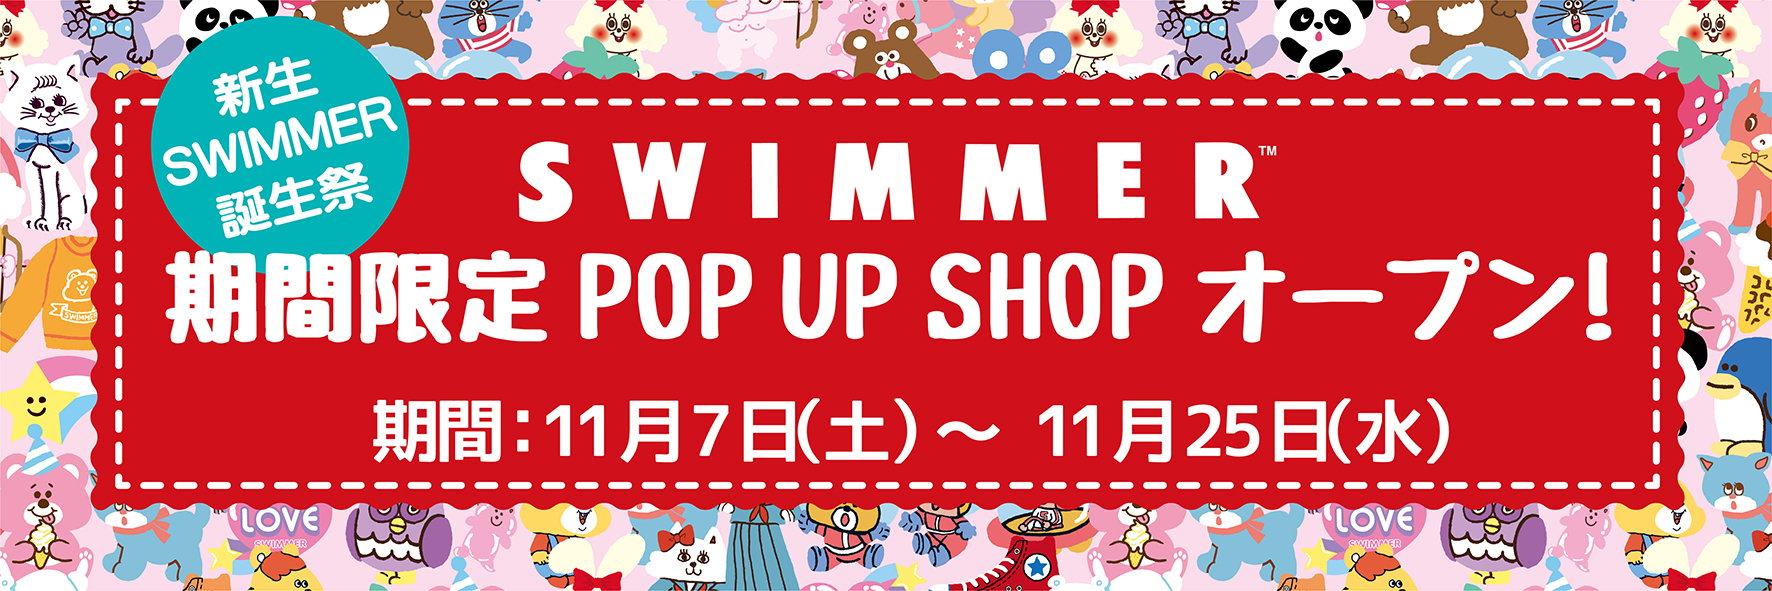 新生 Swimmer 誕生祭 期間限定pop Up Shop オープン 年11月7日 土 11月25日 水 株式会社キデイランドのプレスリリース